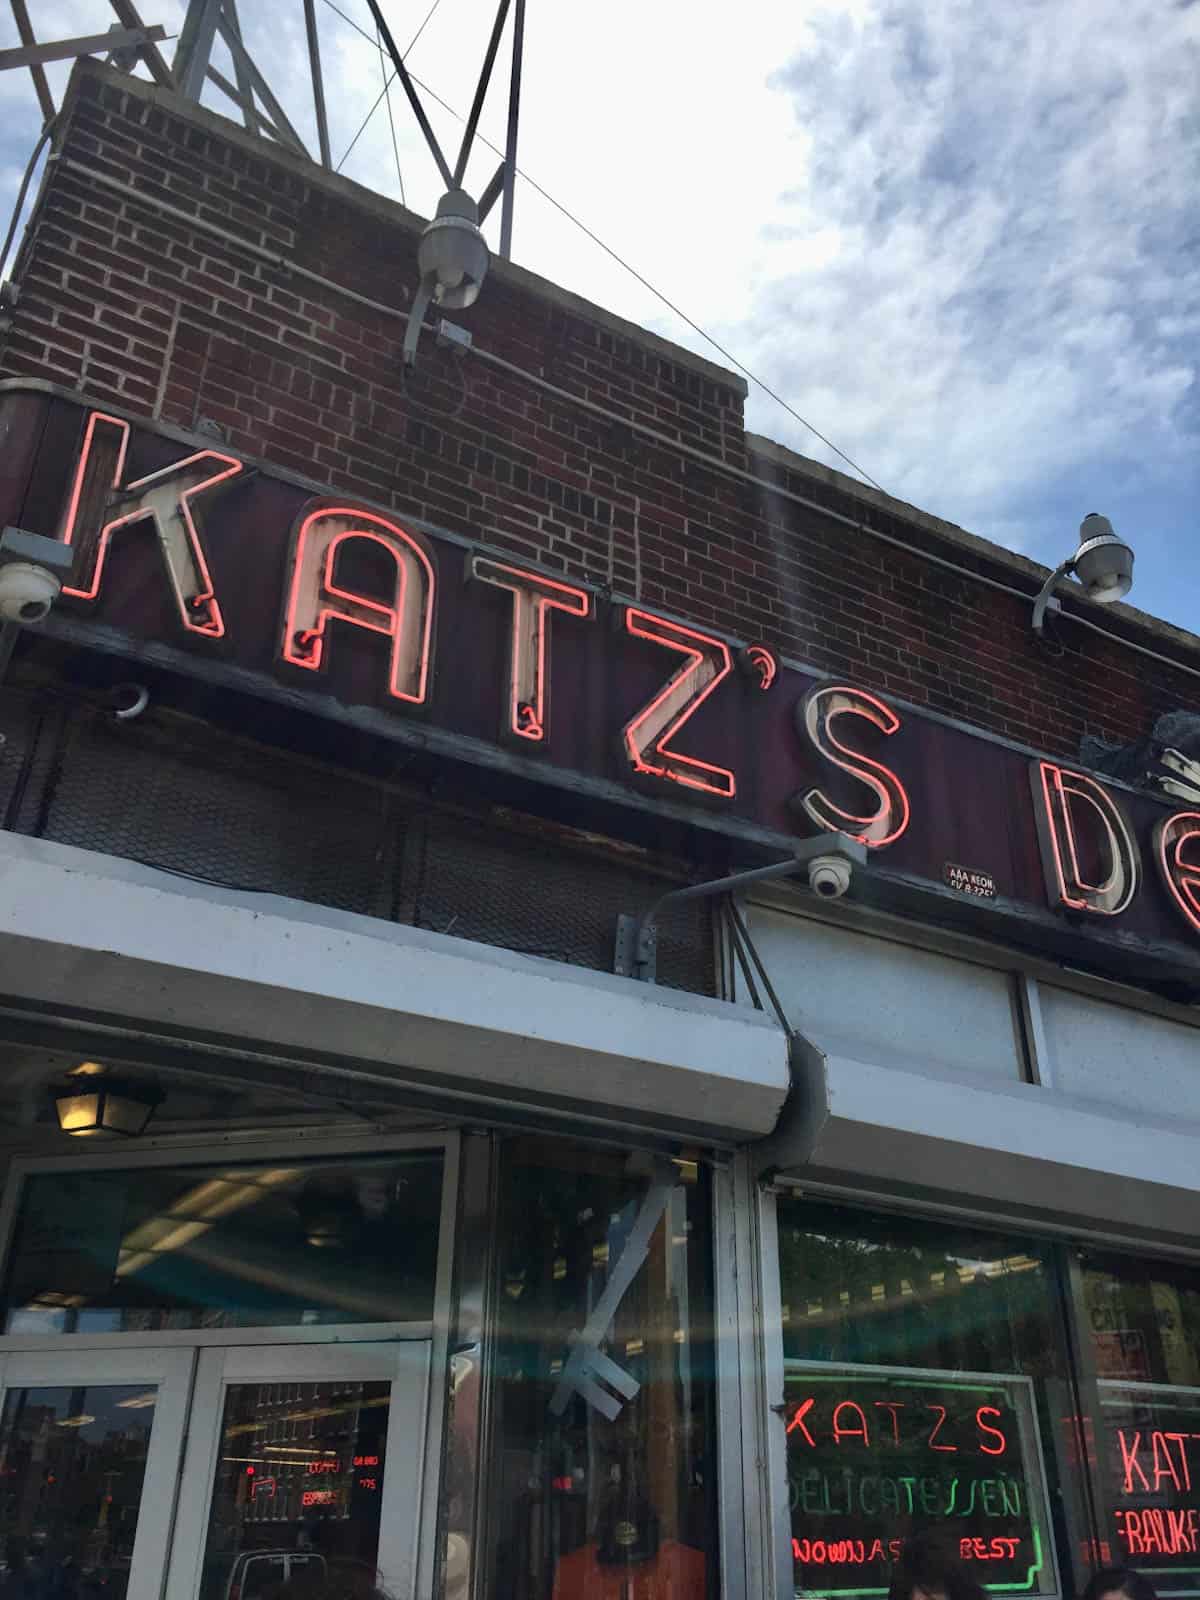 Katz's Deli NYC exterior sign.